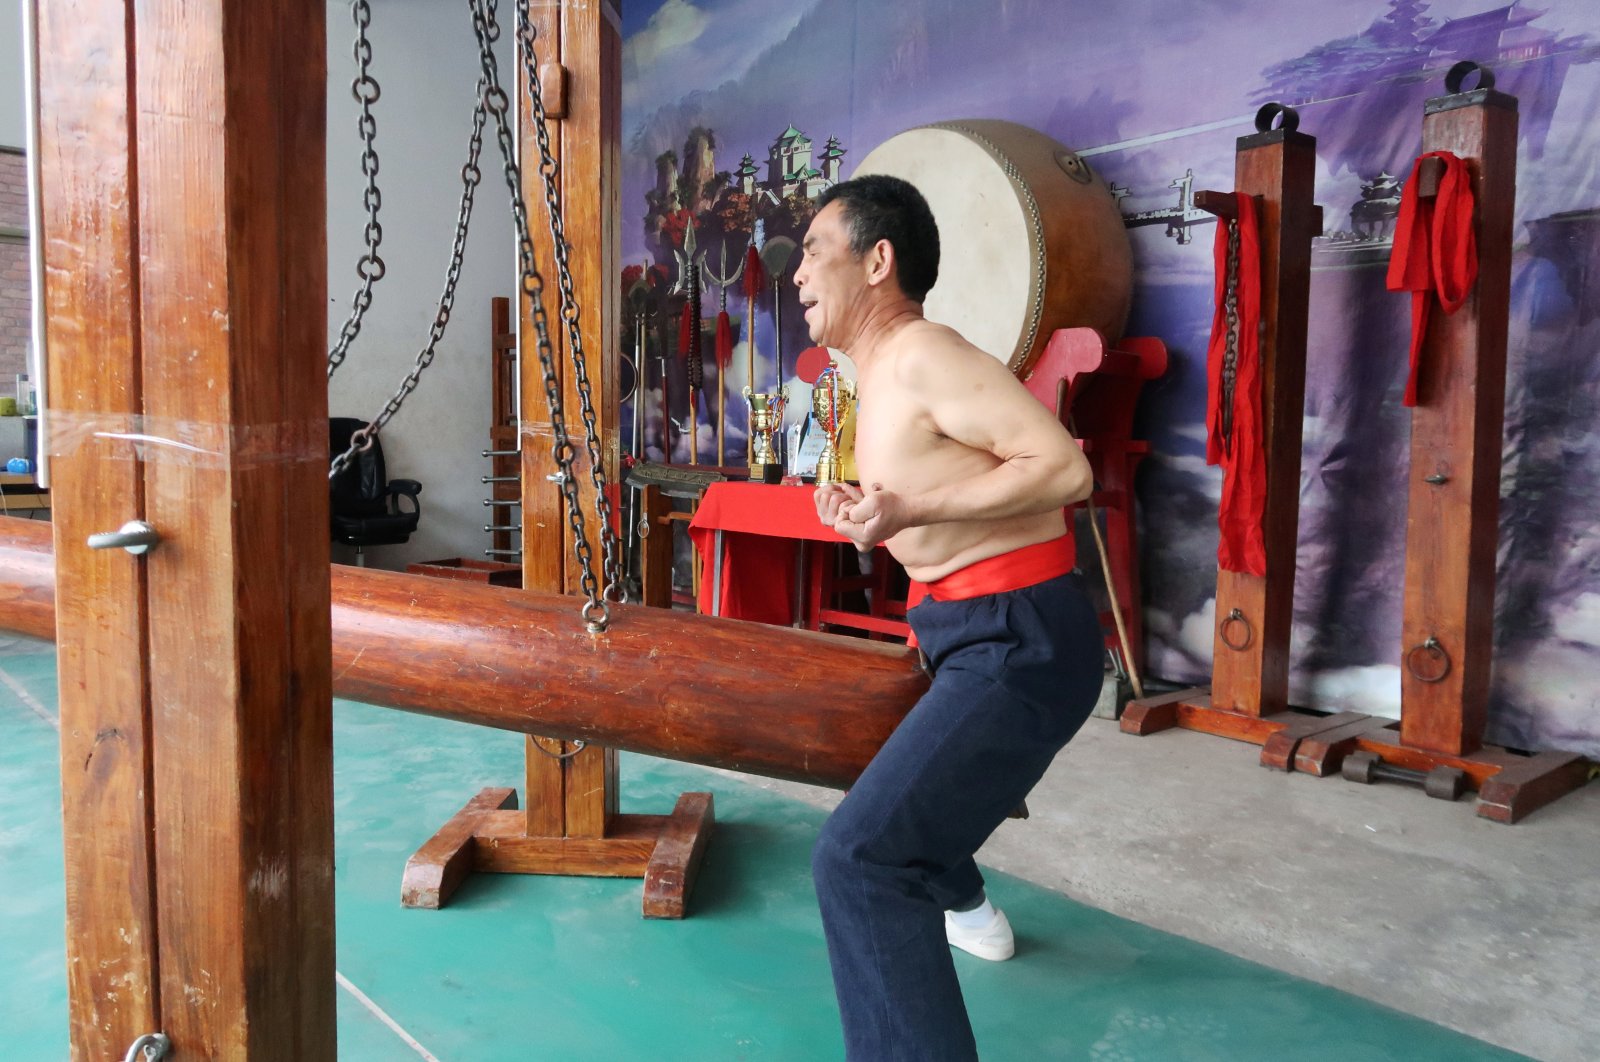 Wang Liutai demonstrates "iron crotch kung fu" at his martial arts academy in the Juntun village of Luoyang, China, Dec. 5, 2020. (Reuters Photo)